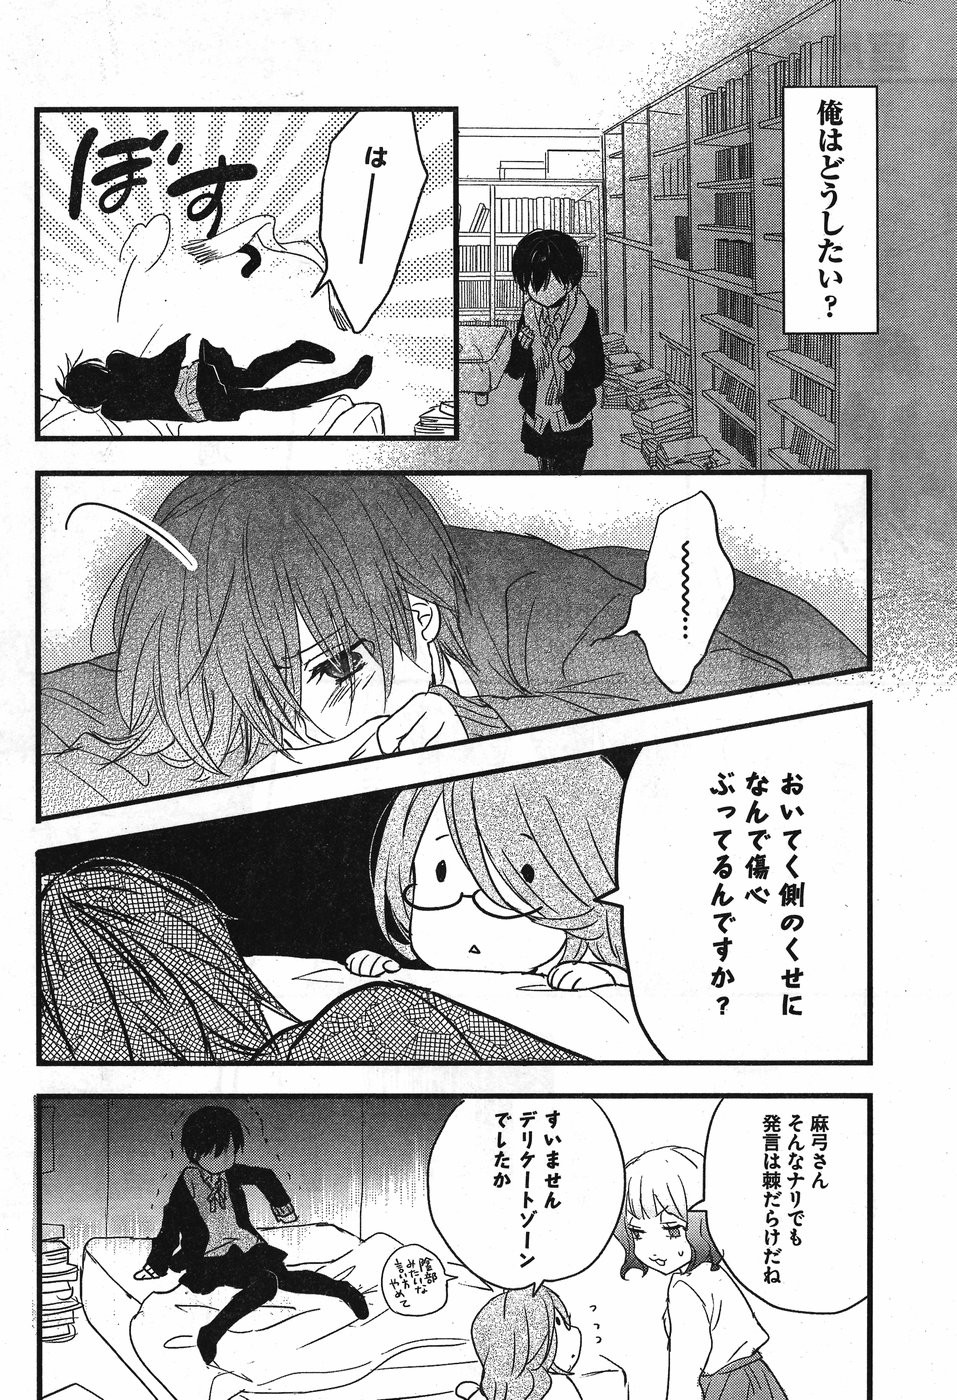 Bokura wa Minna Kawaisou - Chapter 89 - Page 3